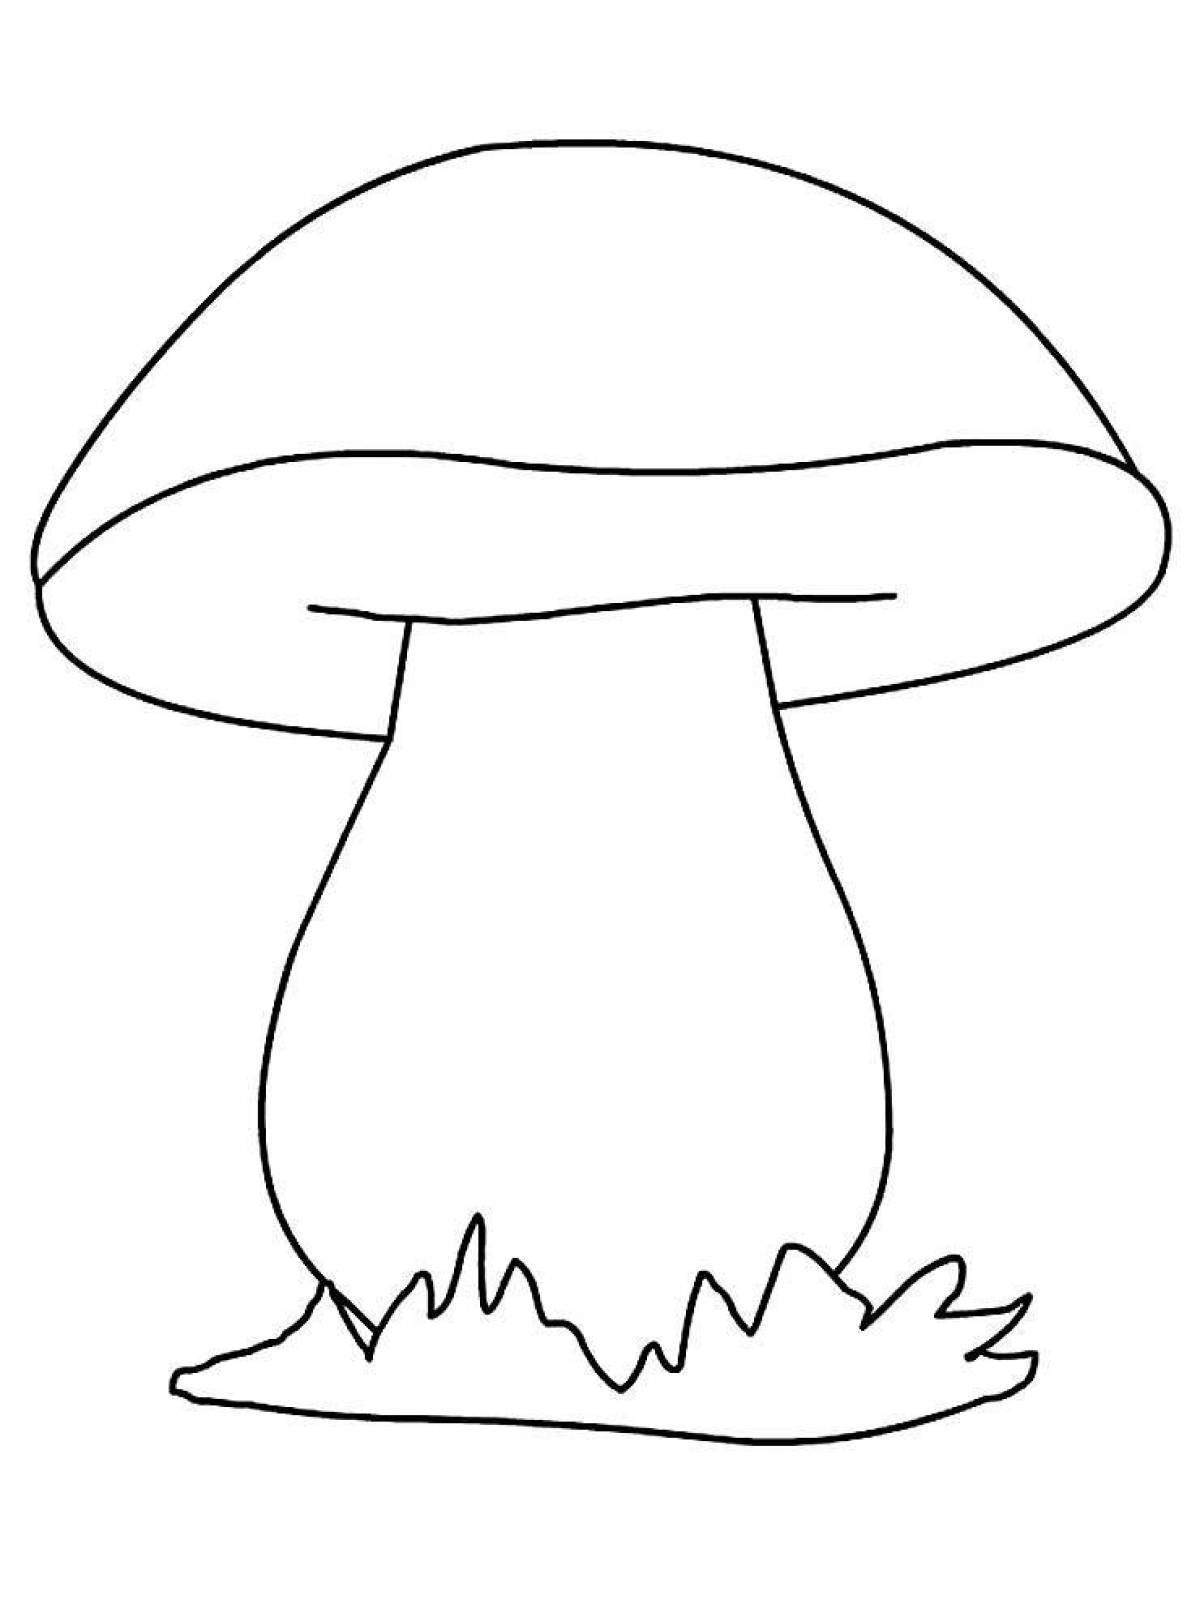 Радостная раскраска грибов для детей